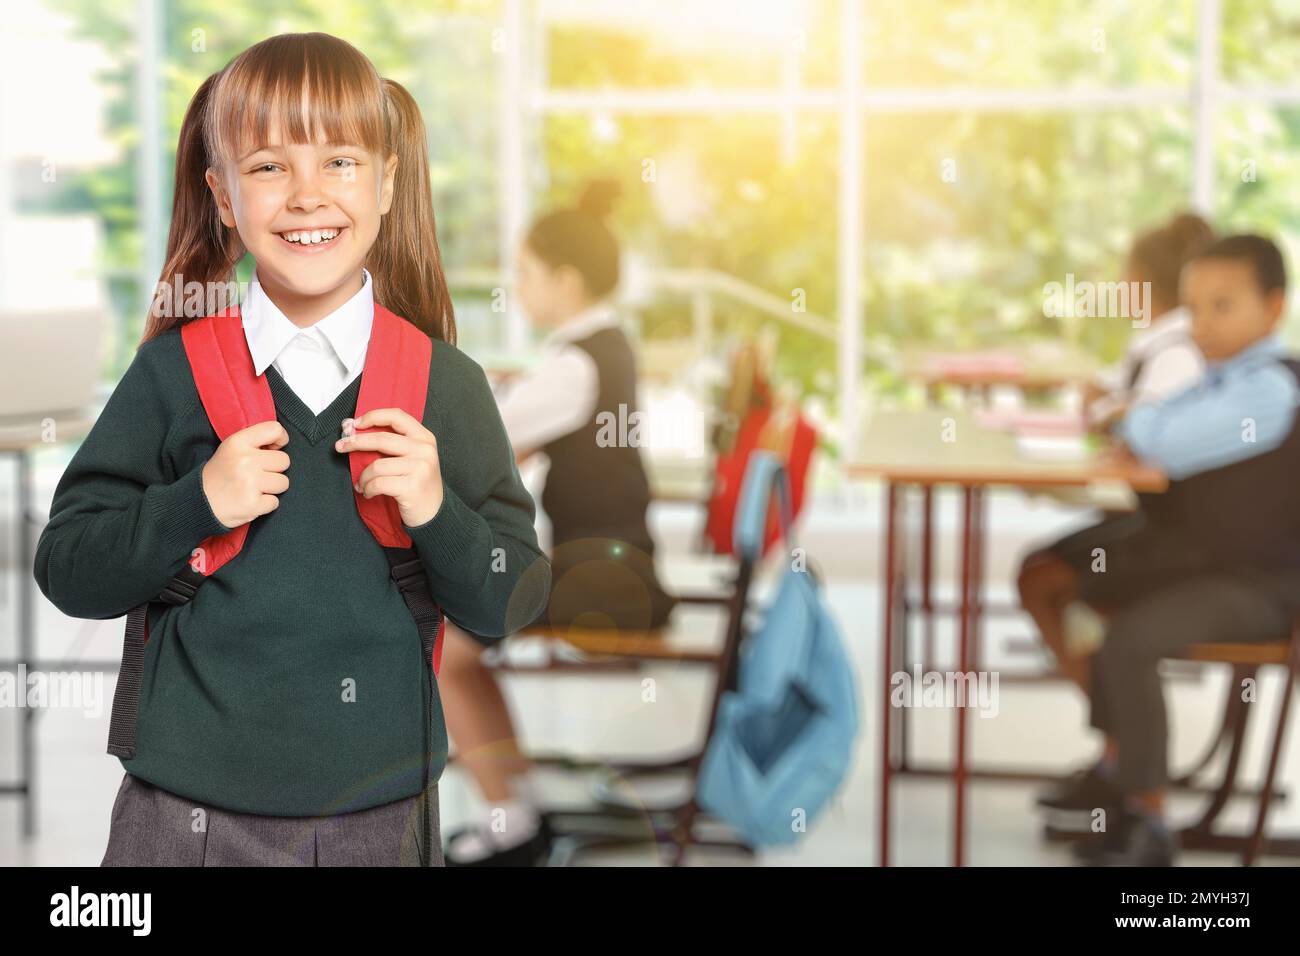 Bonne fille avec sac à dos dans la salle de classe d'école Banque D'Images